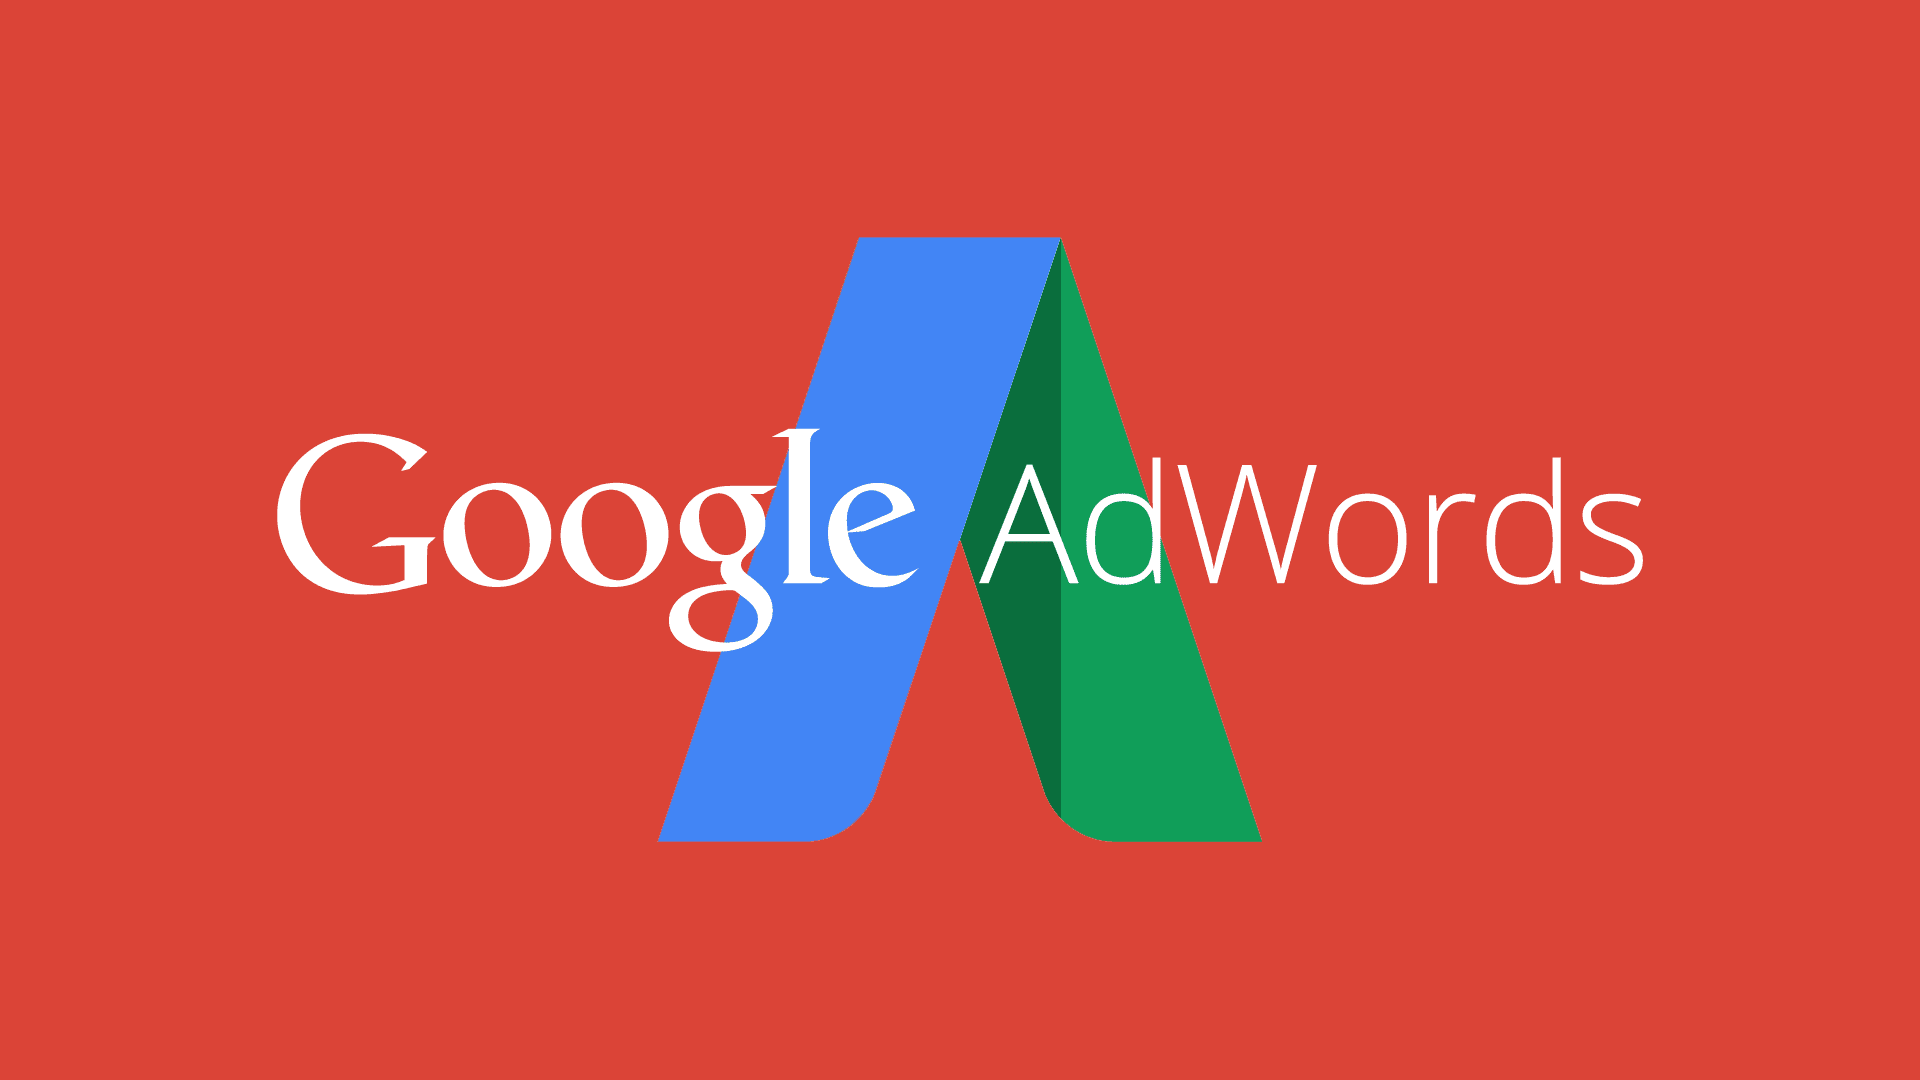 Google Adwords расширяет доступность адаптивных поисковых объявлений